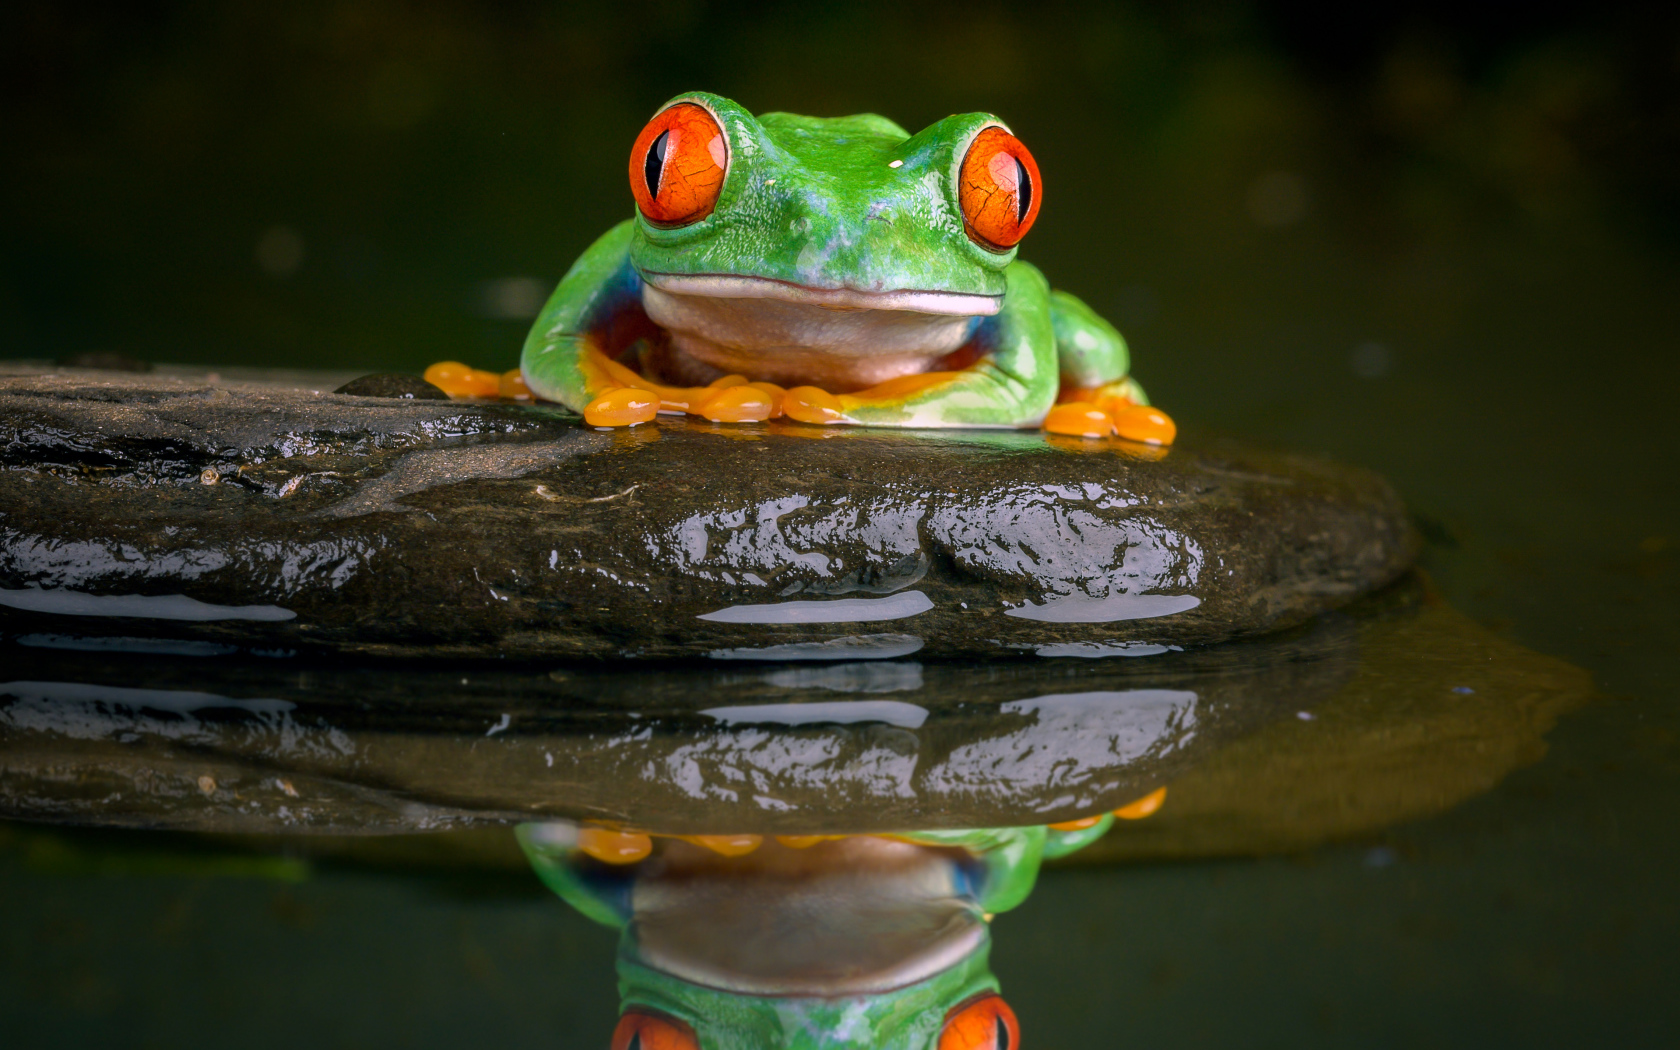 Зеленая лягушка с красными глазами сидит на камне в воде